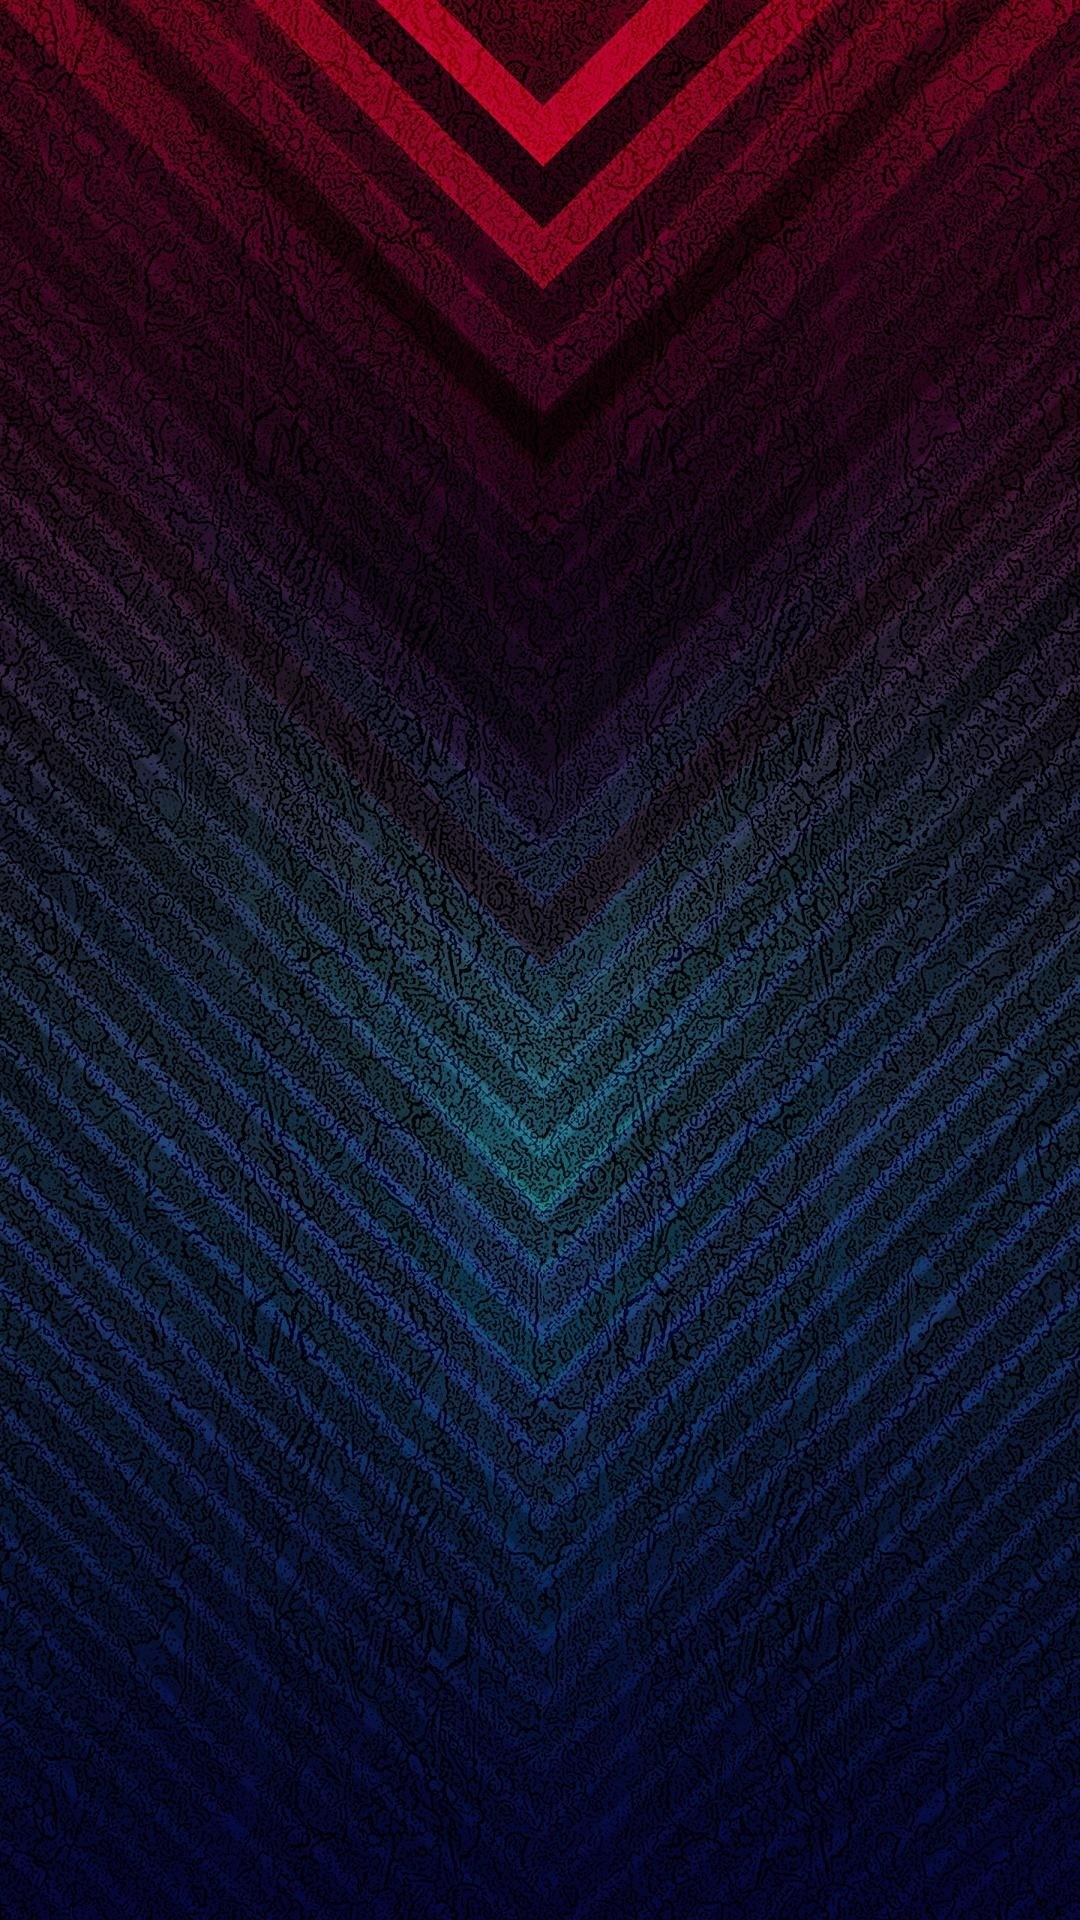 Matrix wallpaper for iPhone